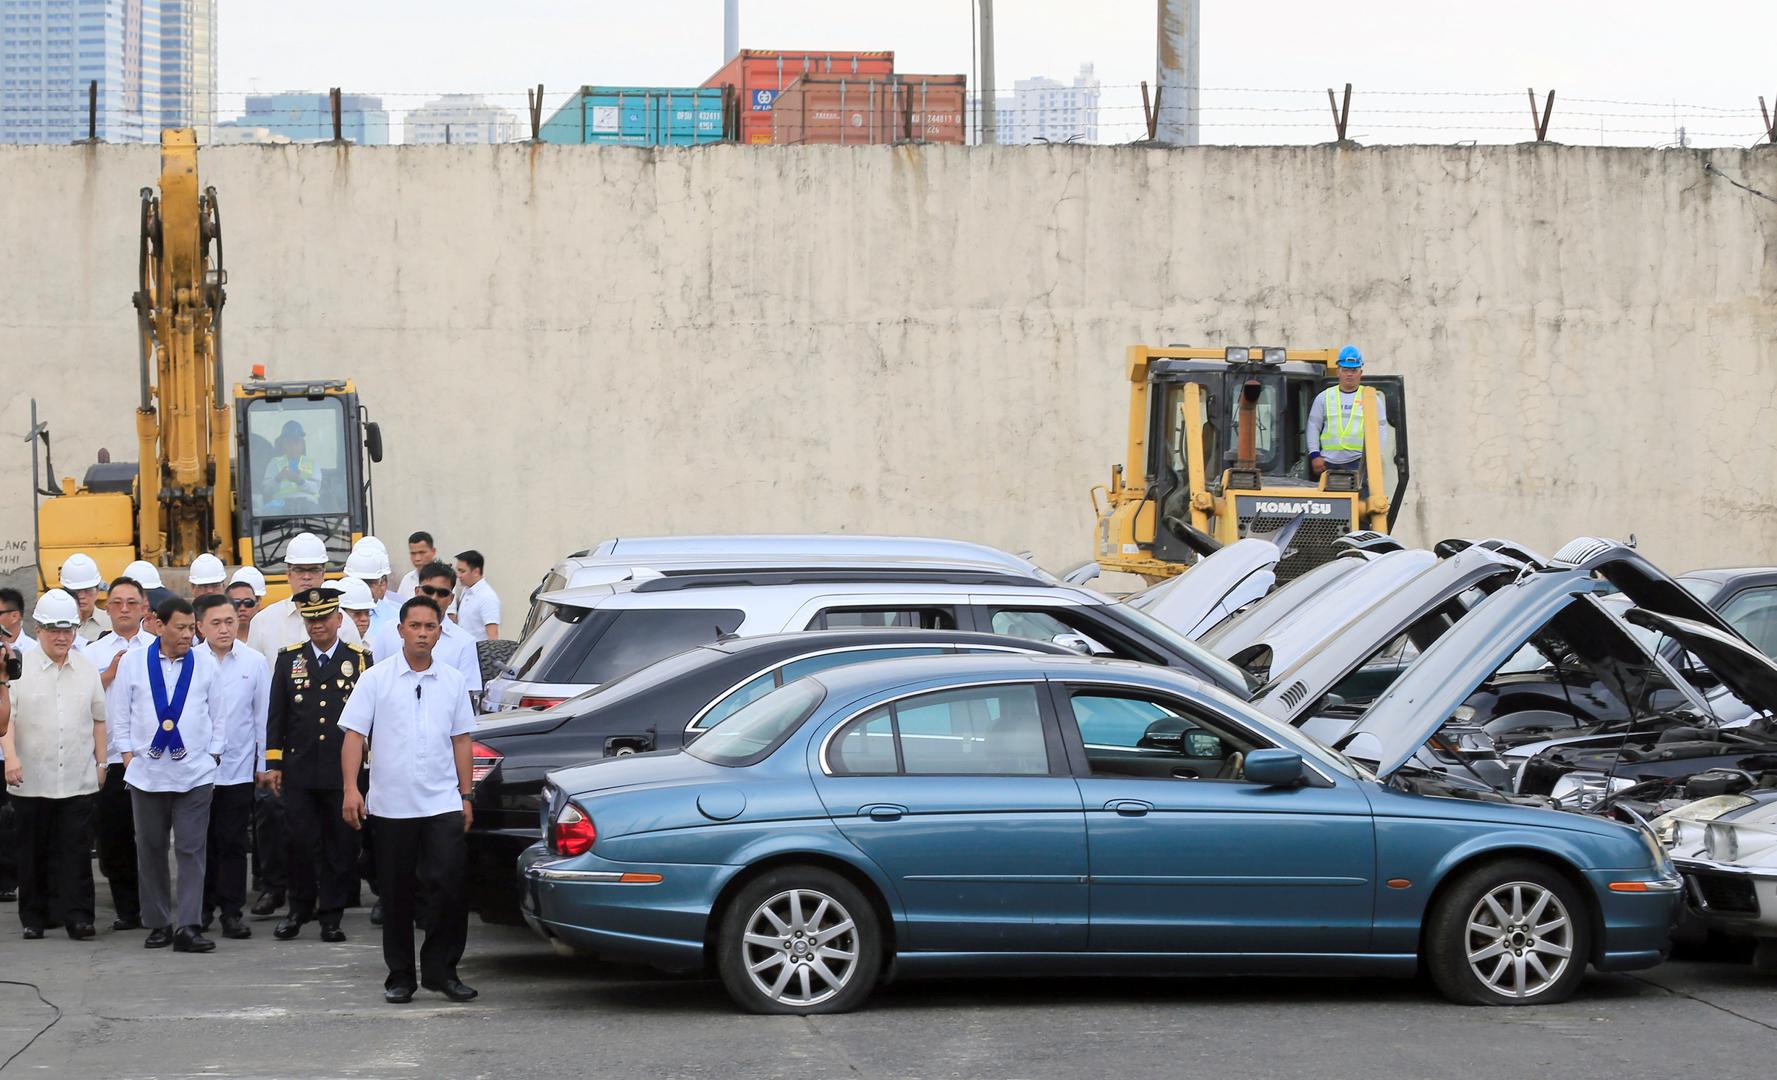 Filipinski predsjednik Rodrigo Duterte ovime je umnogome promijenio dosadašnju praksu kad su zaplijenjena vozila završila na dražbama.